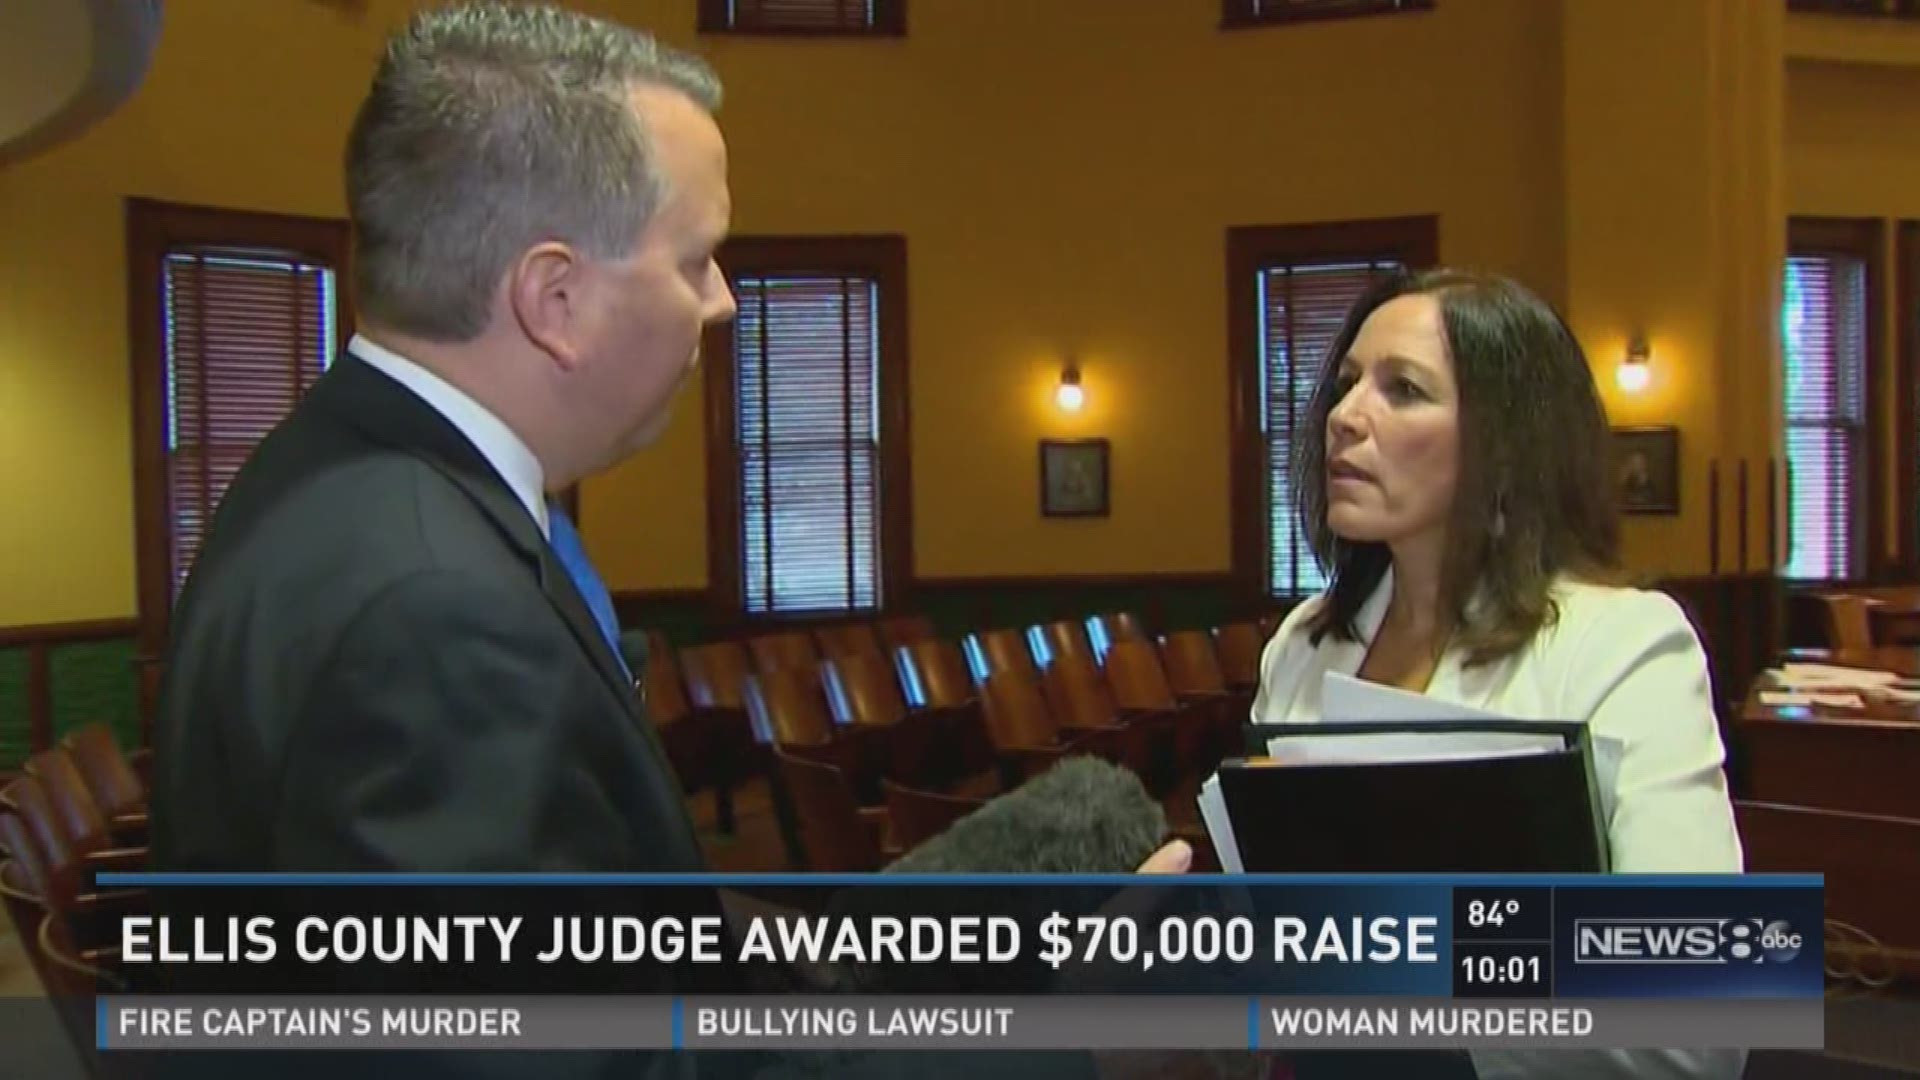 Ellis County judge awarded $70,000 raise